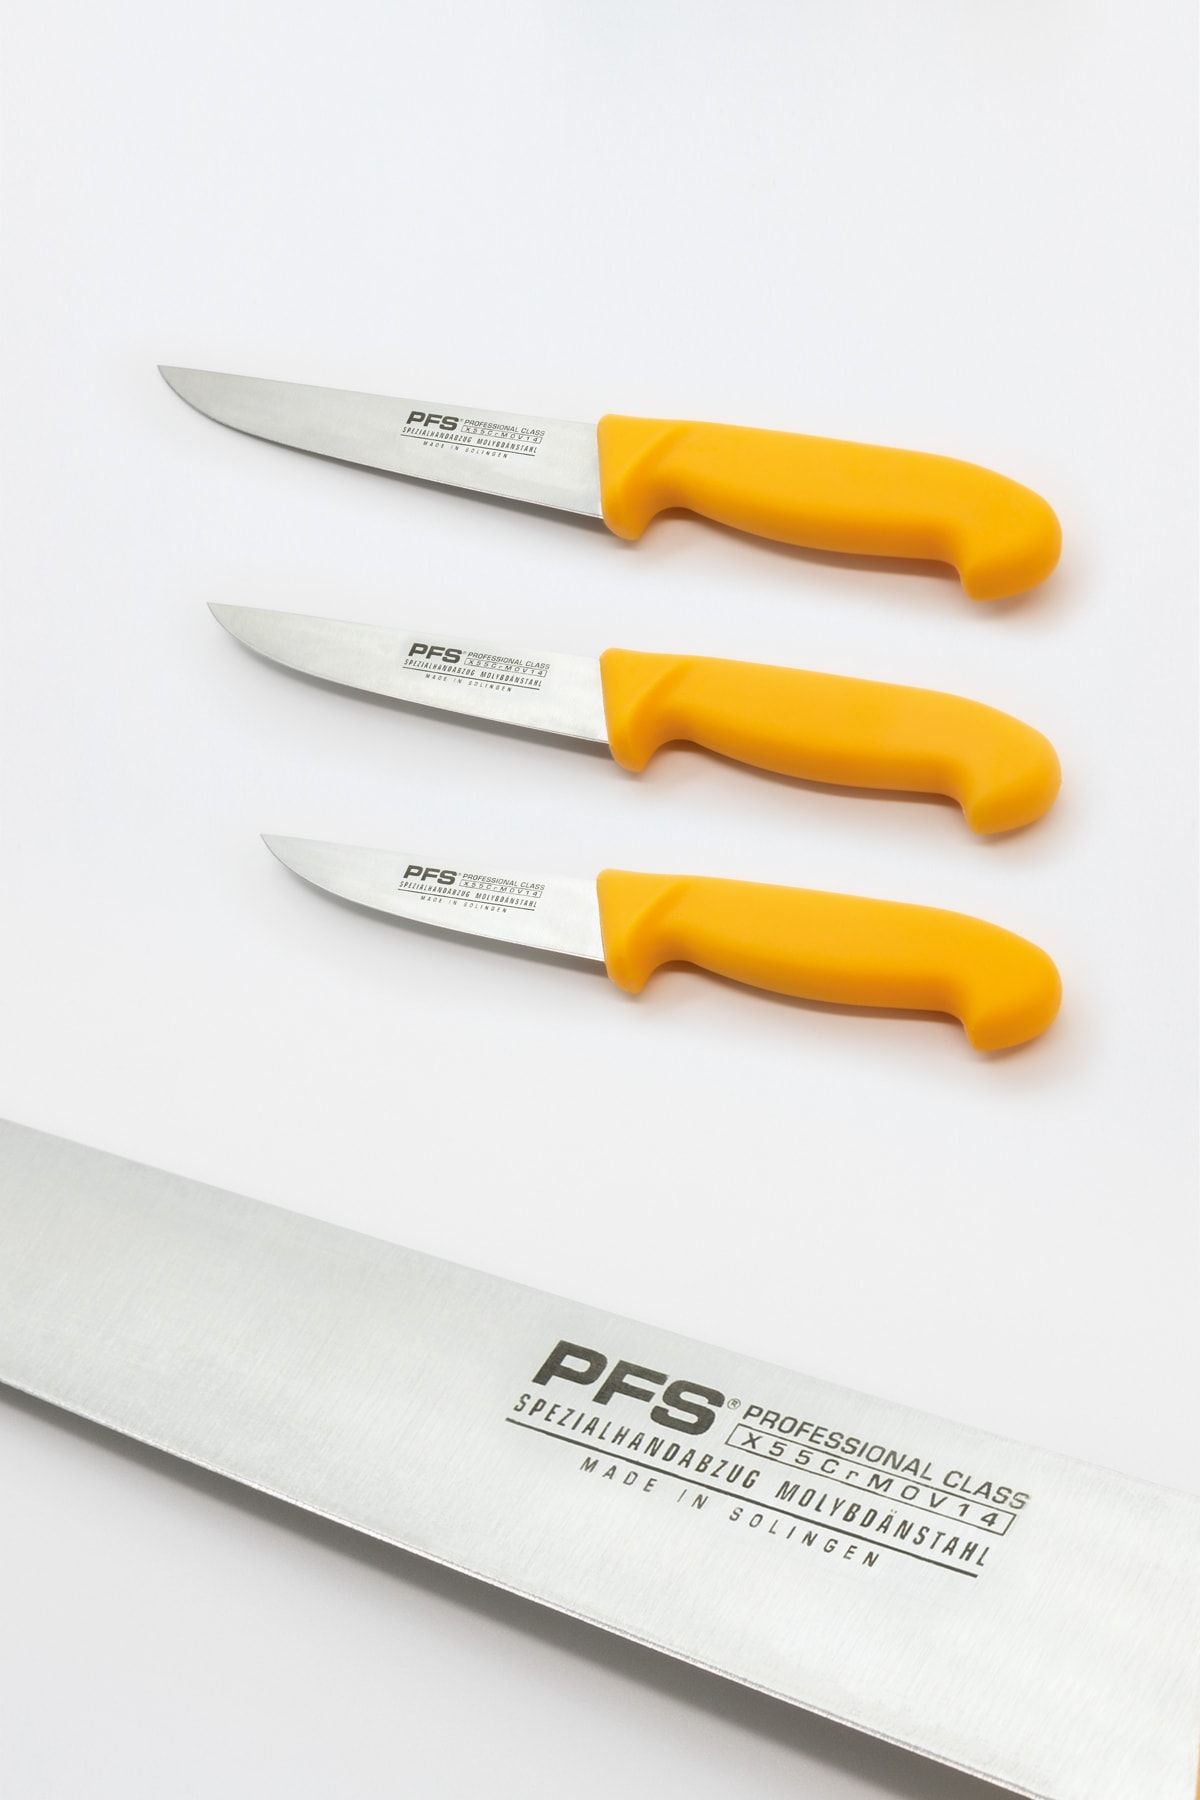 Solingen Çok Yönlü Bıçak Mutfak ve Kasap Bıçağı 3'lü Set